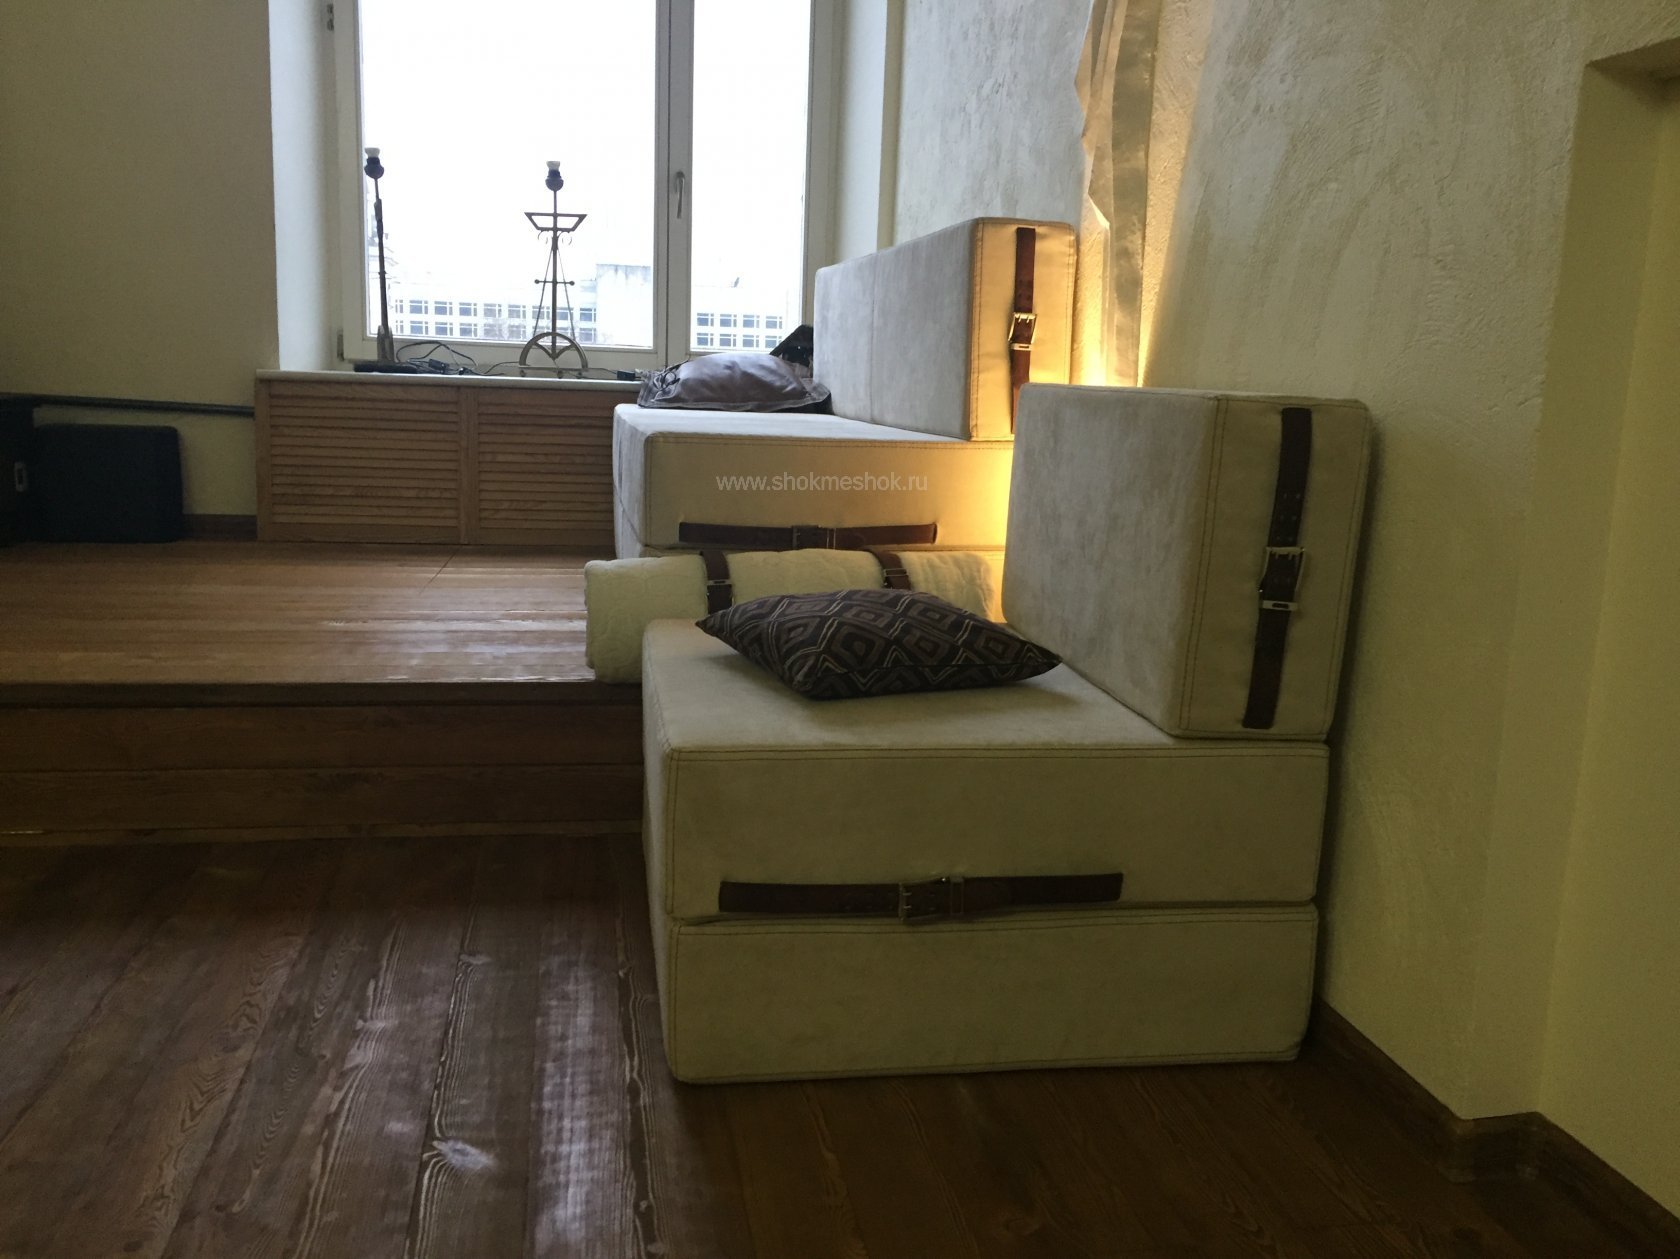 Интерьер в стиле Loft с бескаркасной мебелью